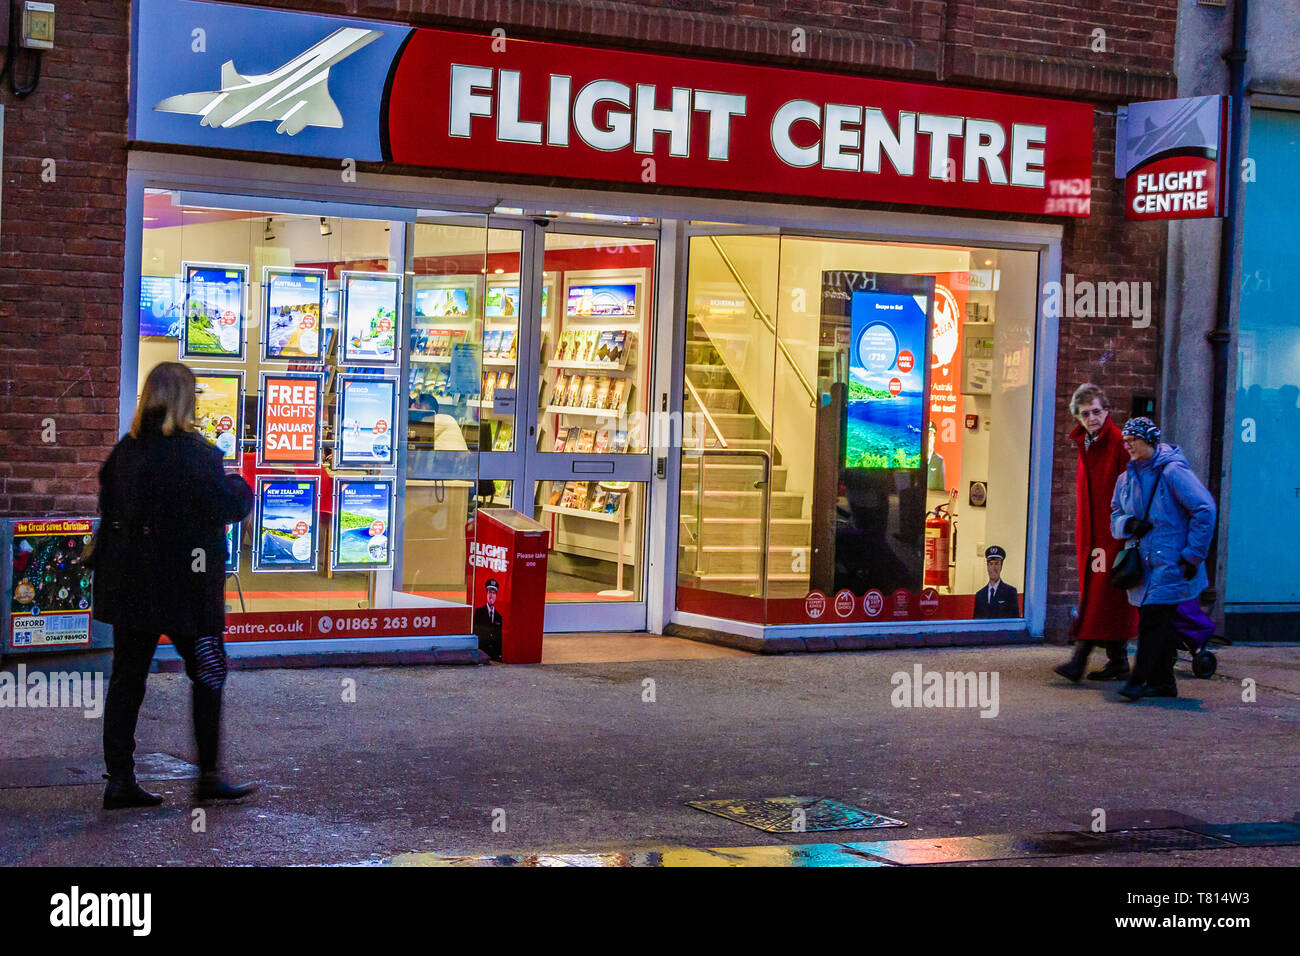 Persone che passano il negozio di fronte esterno di un Centro di Volo agenzia di viaggi, Queen St, Oxford, UK. Dicembre 2018. Foto Stock